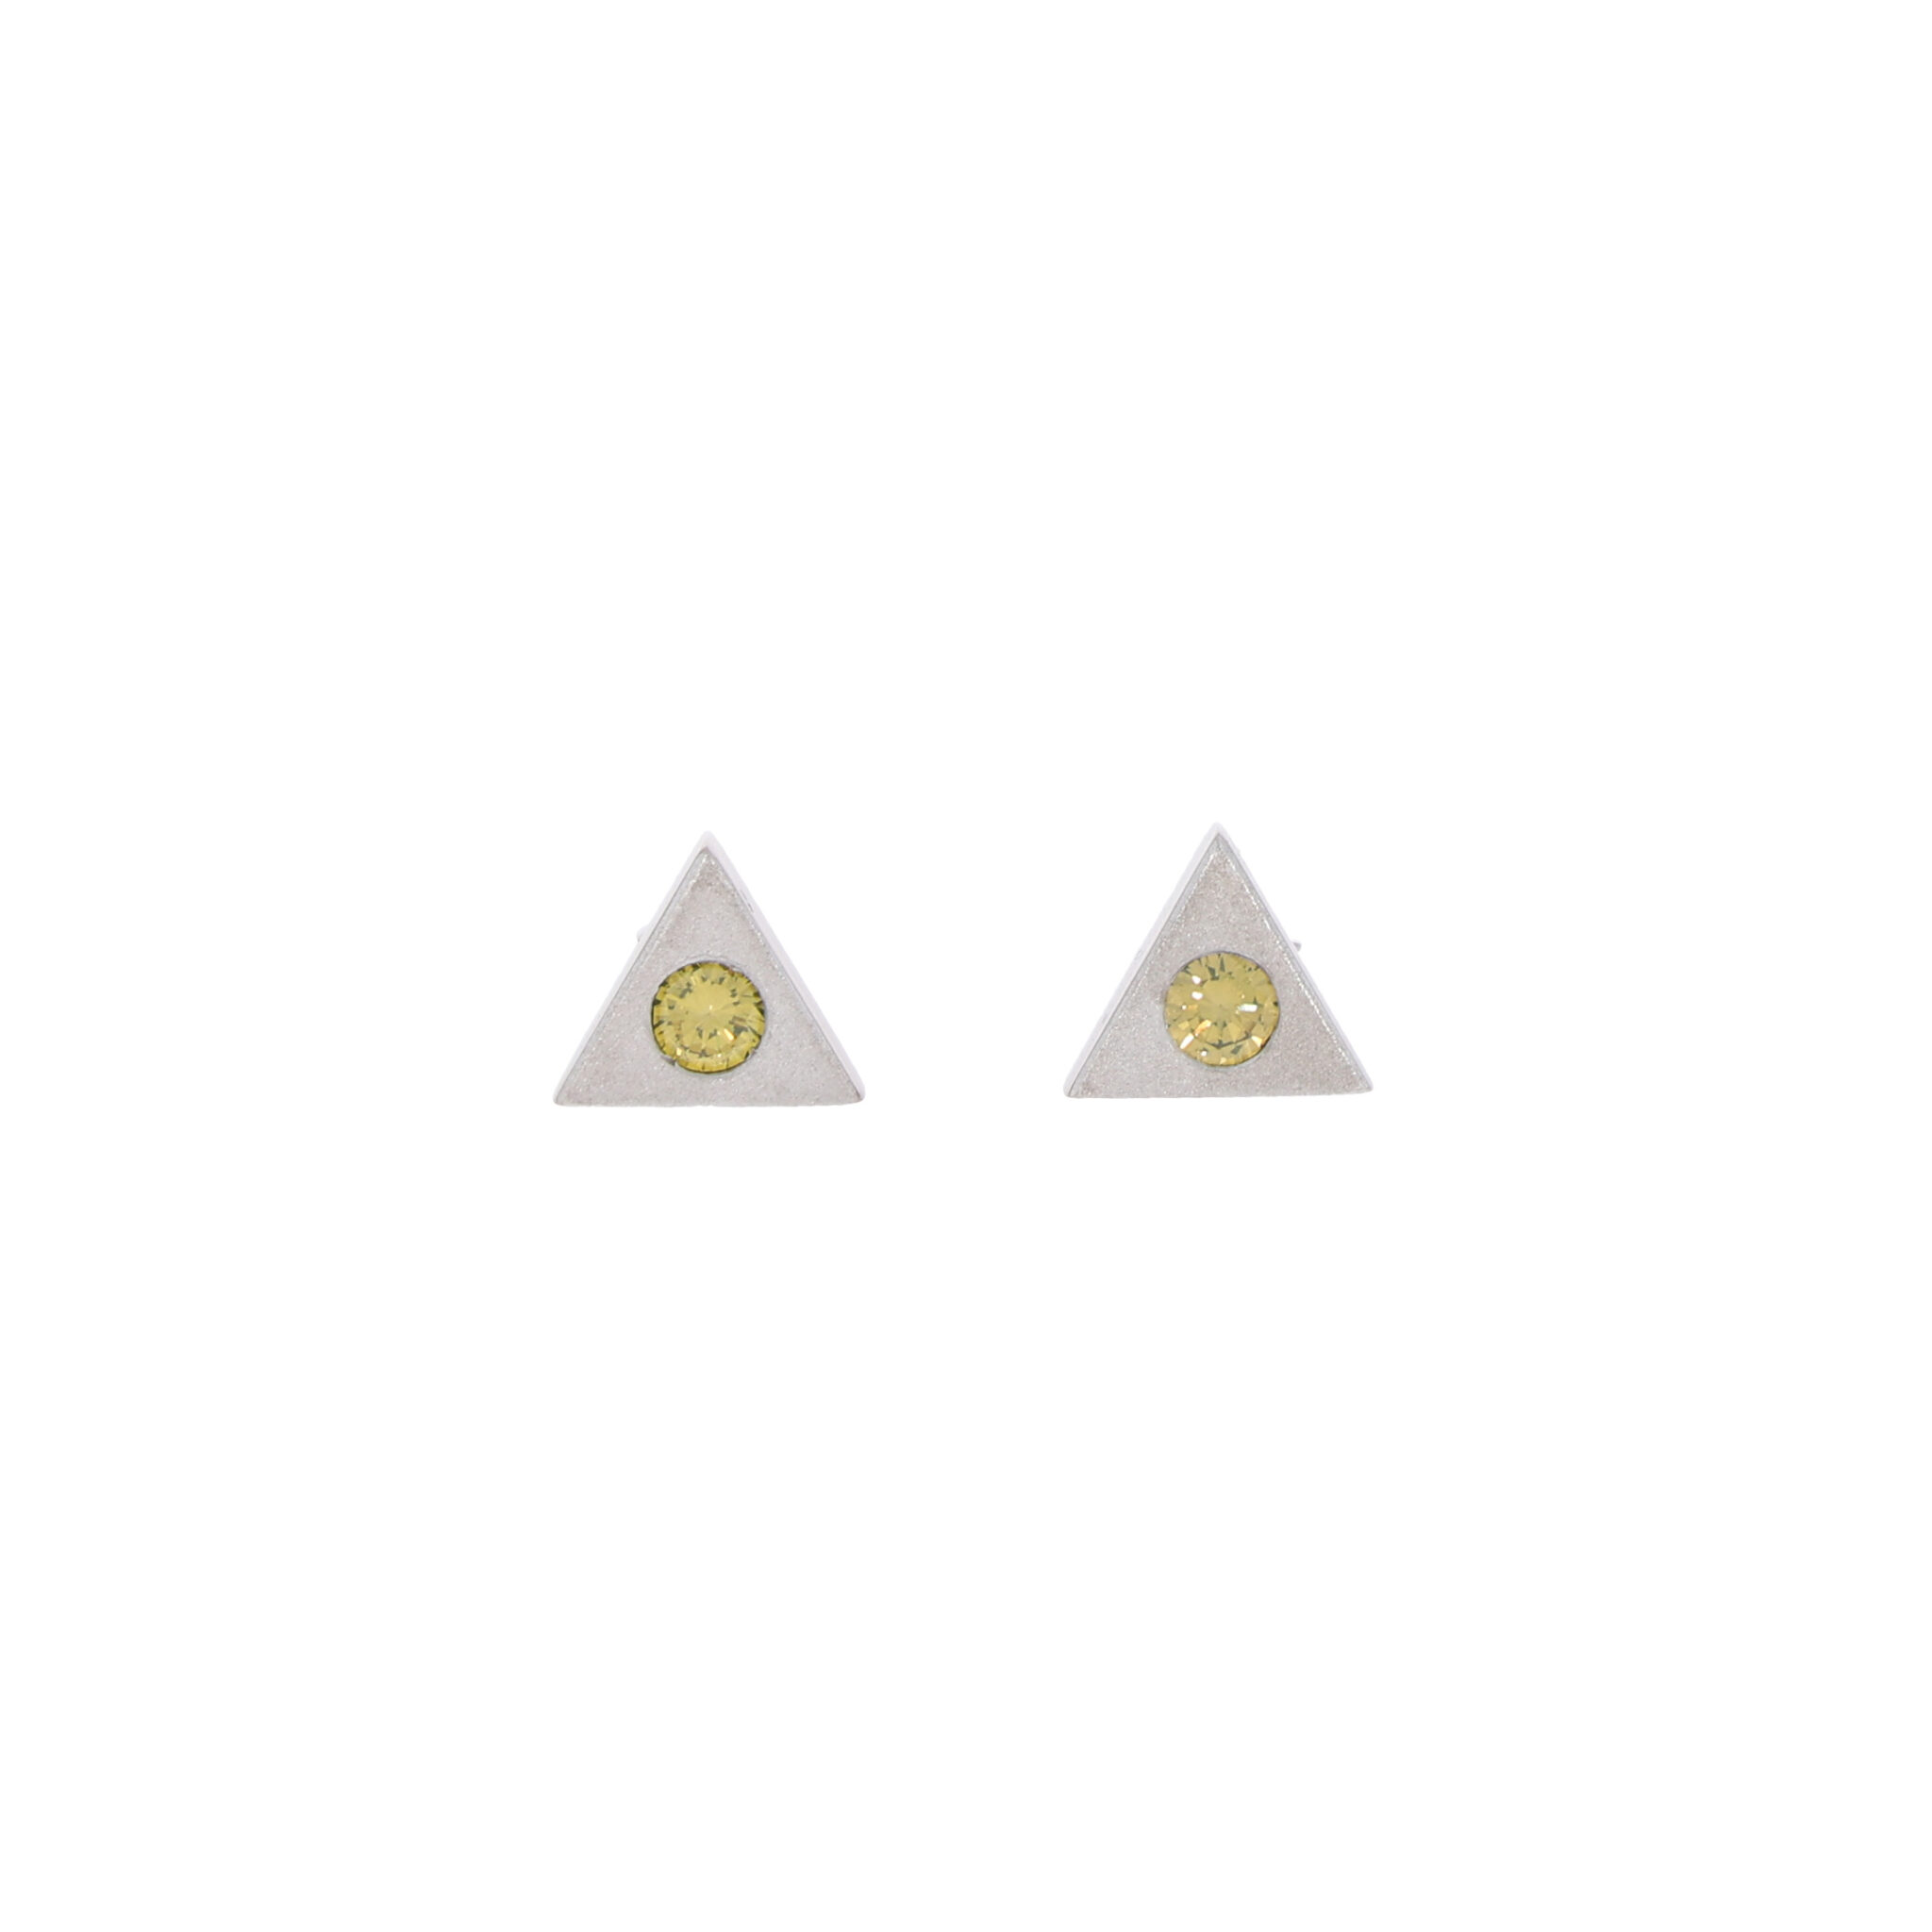 Ohrstecker Weißgold 750 / 18K mit ca. 0,40 ct Diamanten